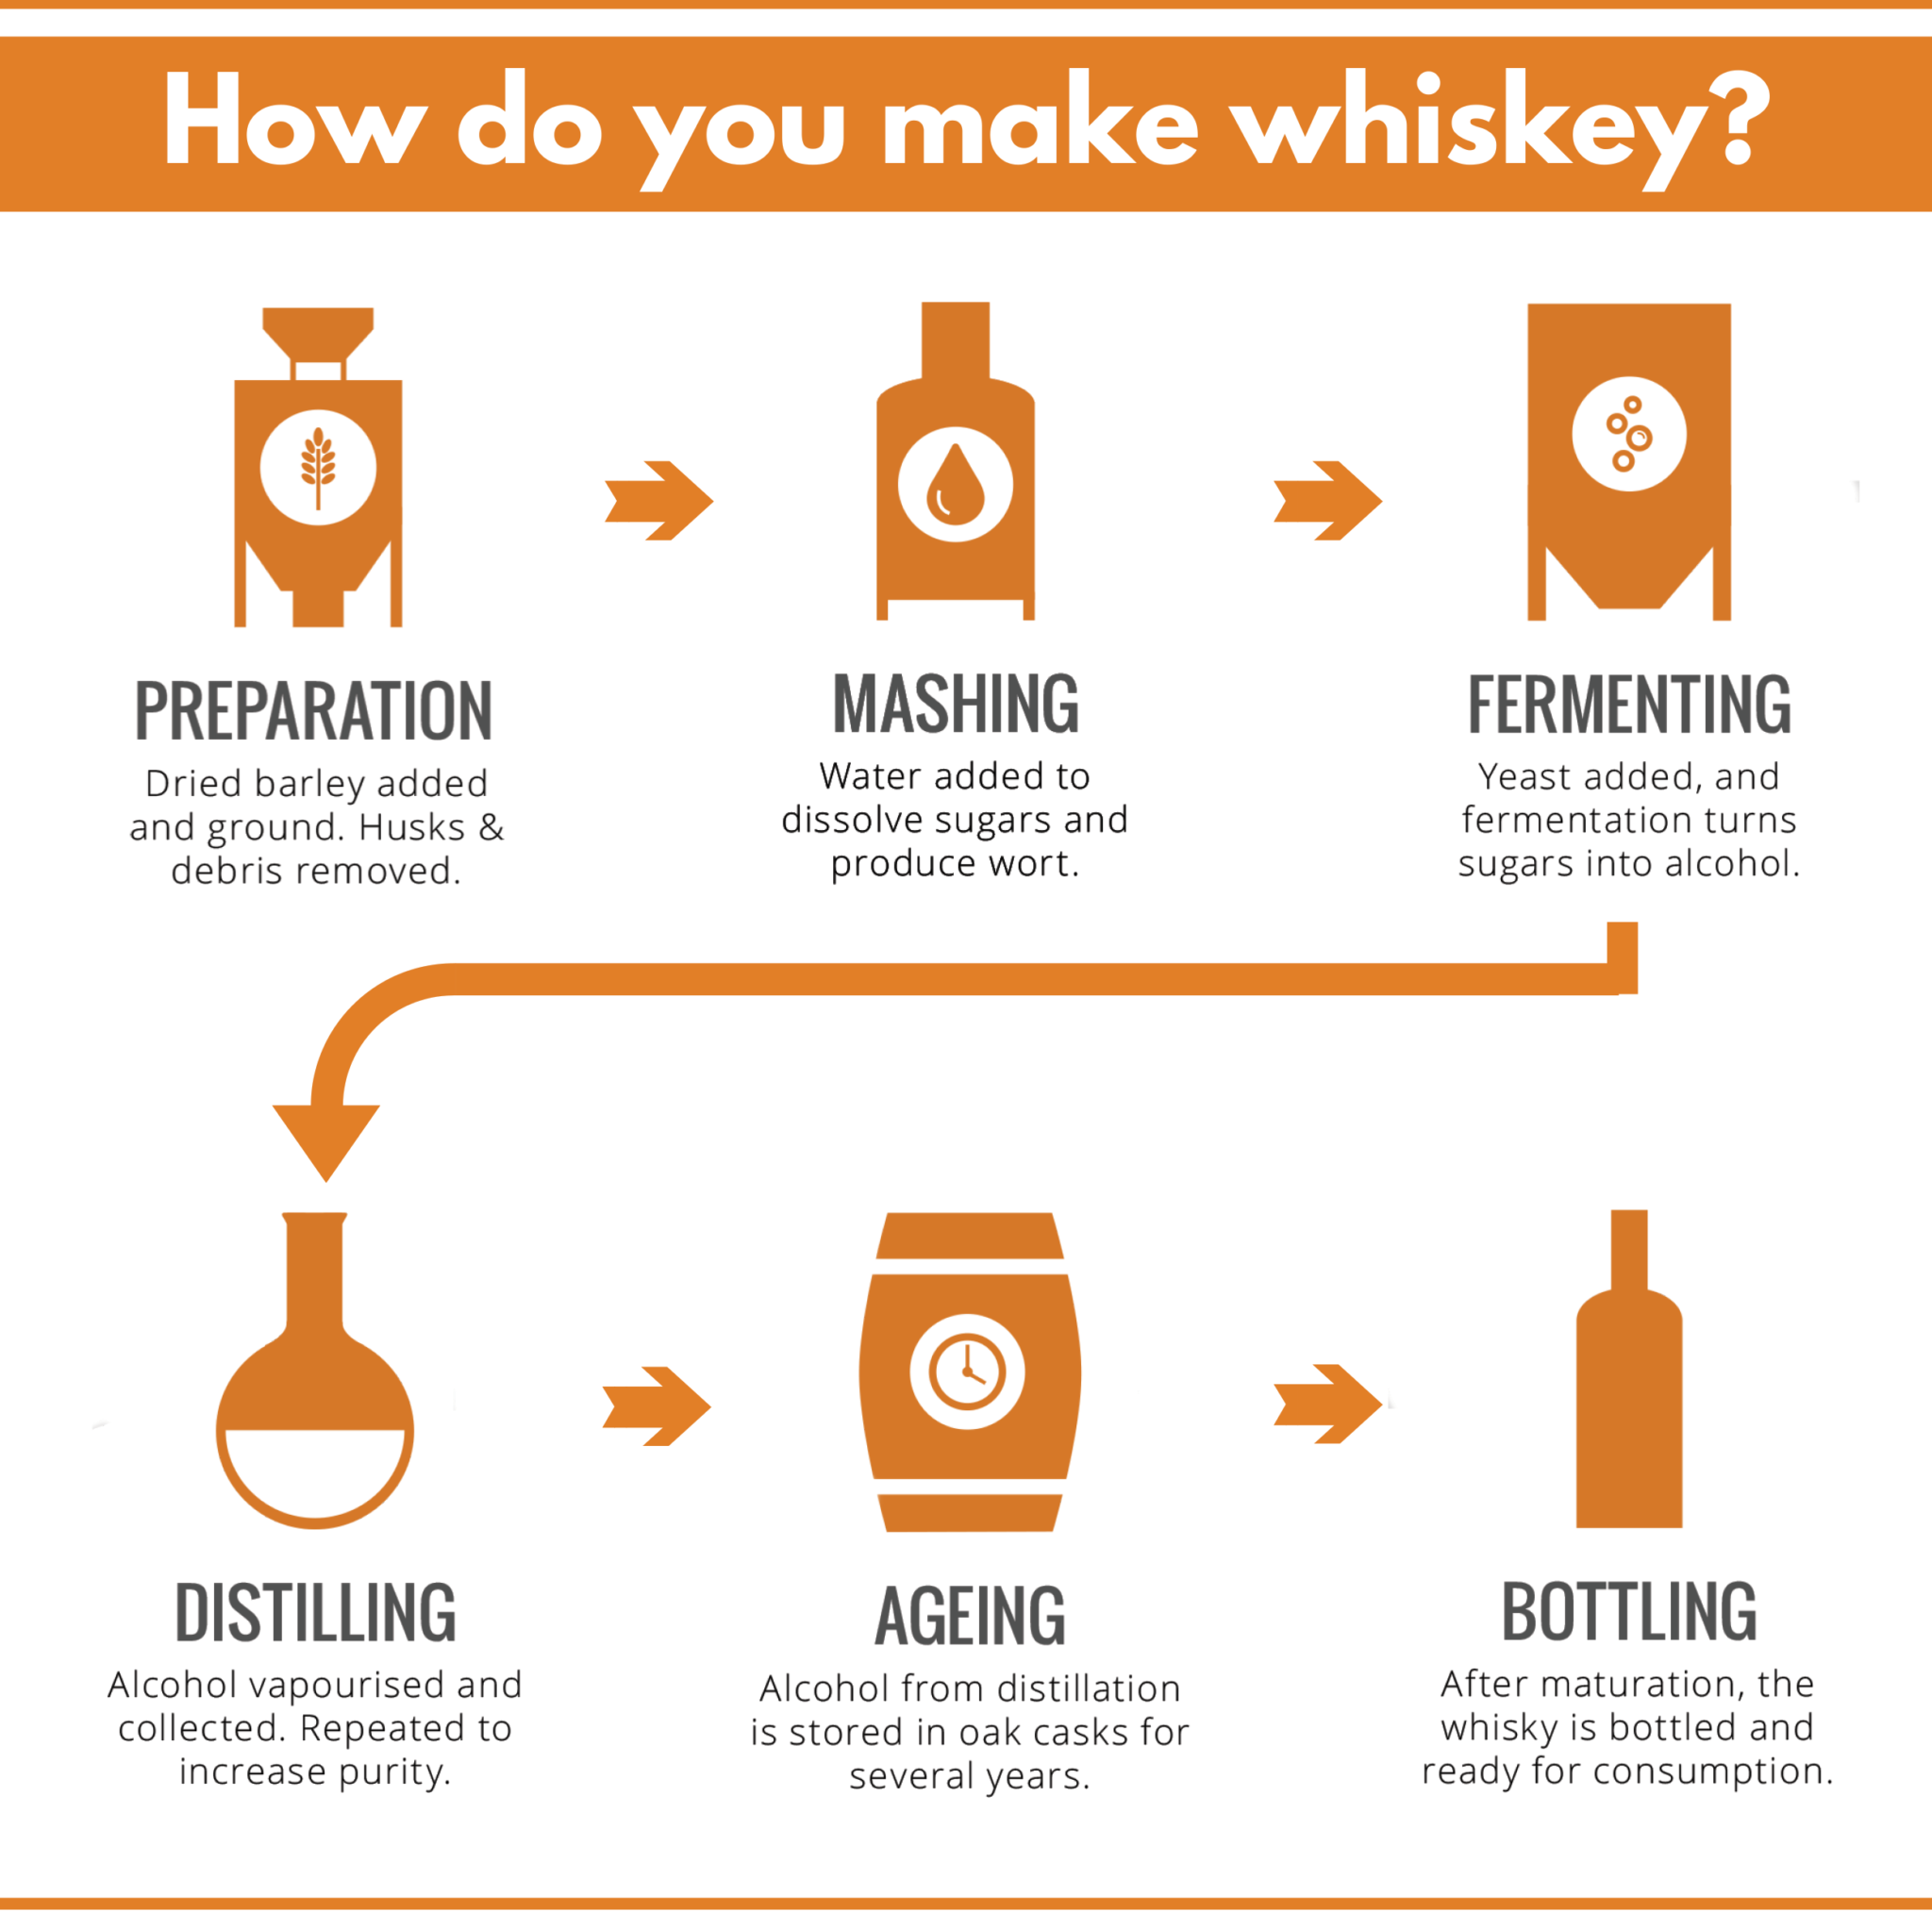 How do we make whiskey?